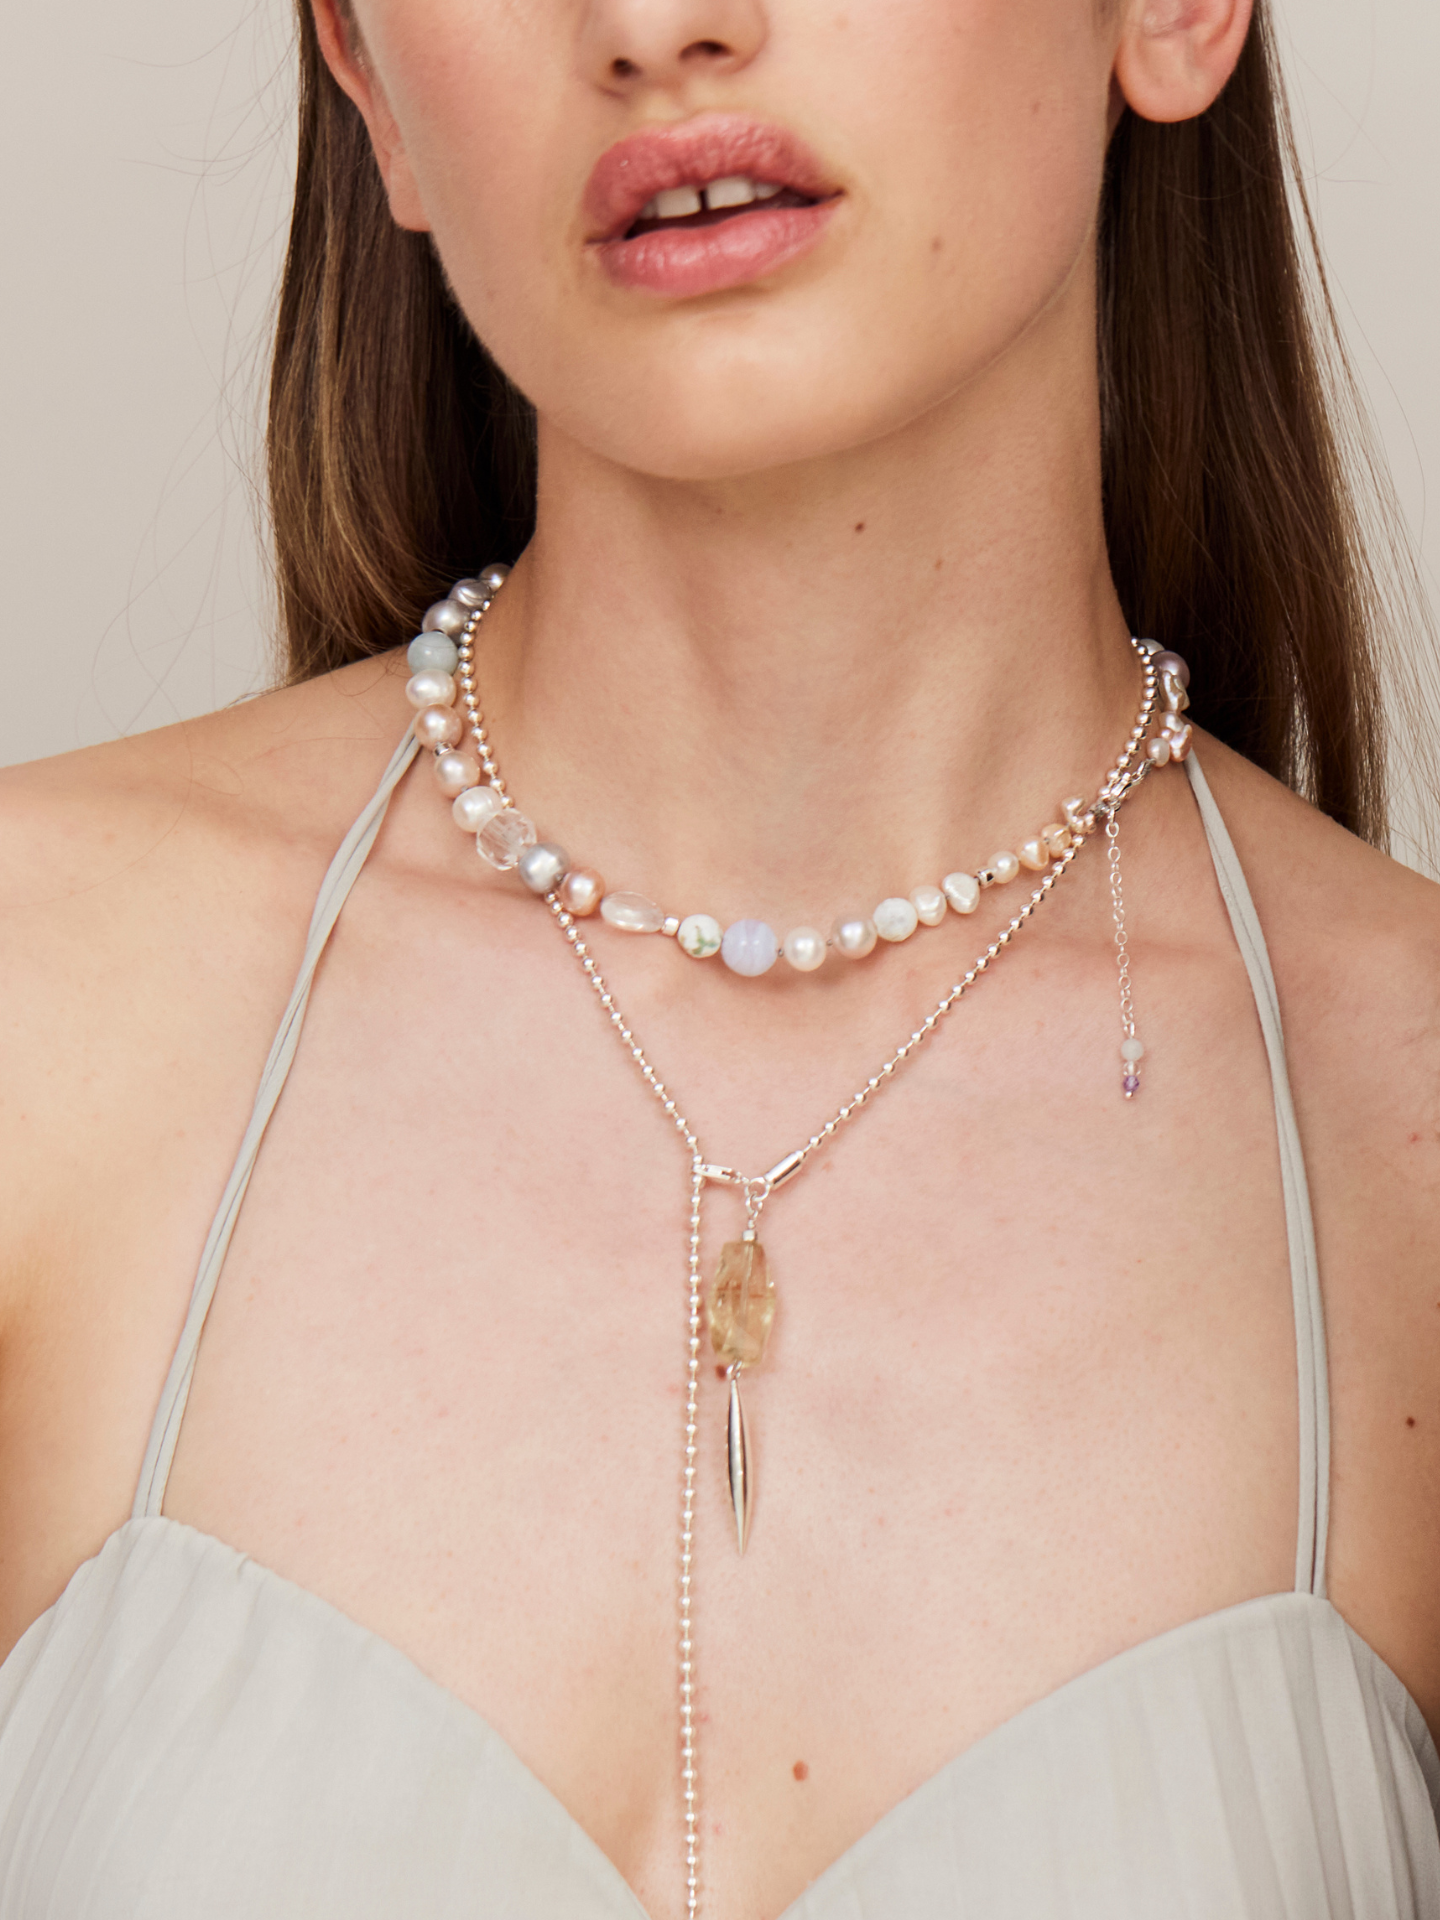 Frau mit vollen Lippen trägt eine edle Halskette mit Perlen und Anhängern in verschiedenen Längen.